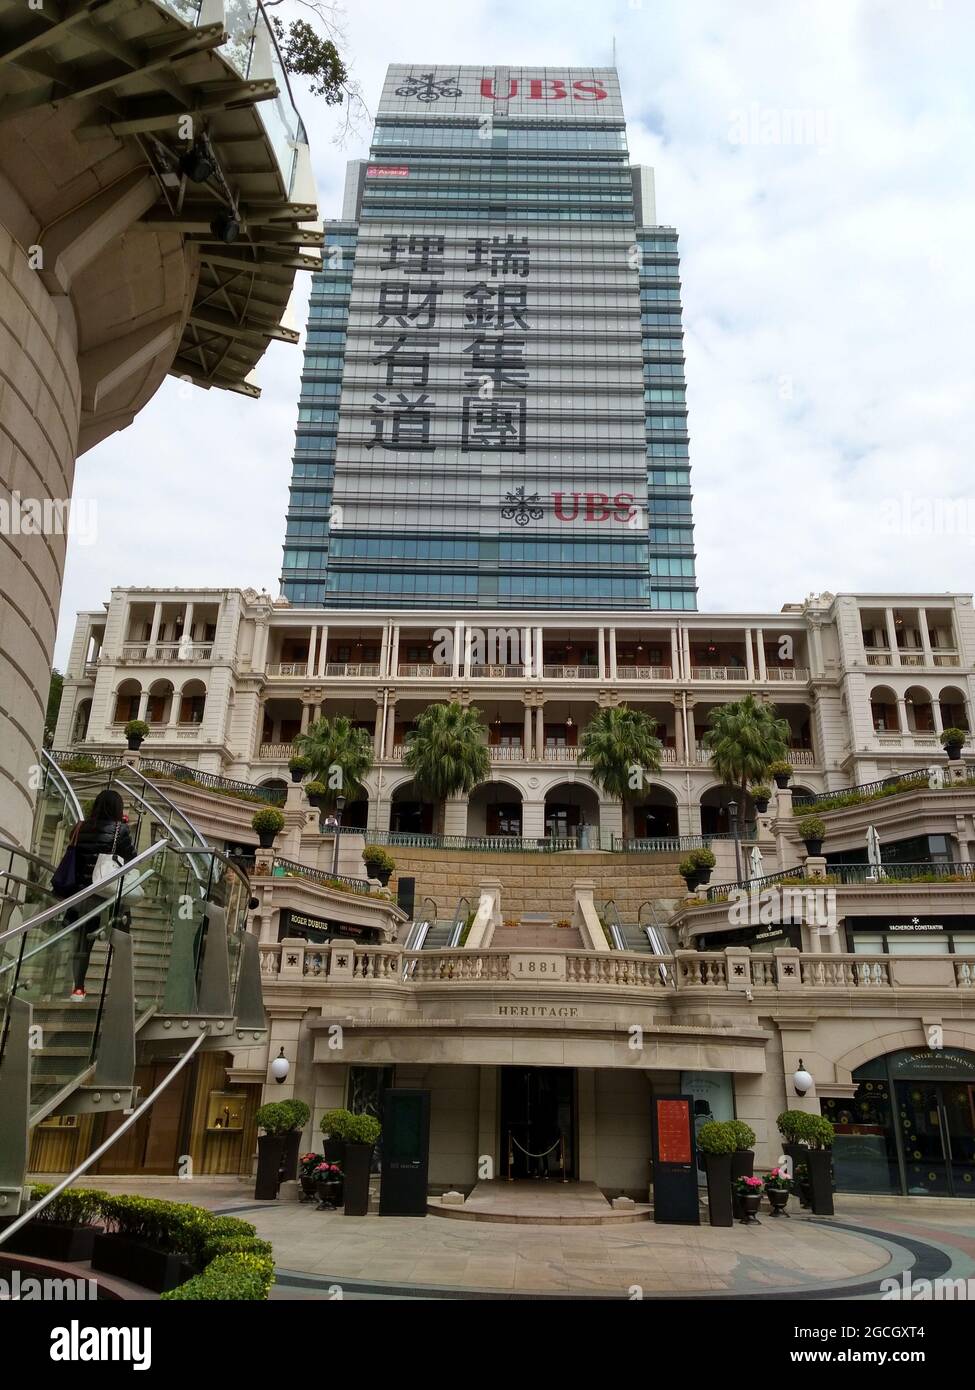 Das wunderschöne Heritage 1881, das ehemalige Old Marine Police Headquarters, befindet sich im Stadtteil Kowloon in Hongkong. Stockfoto